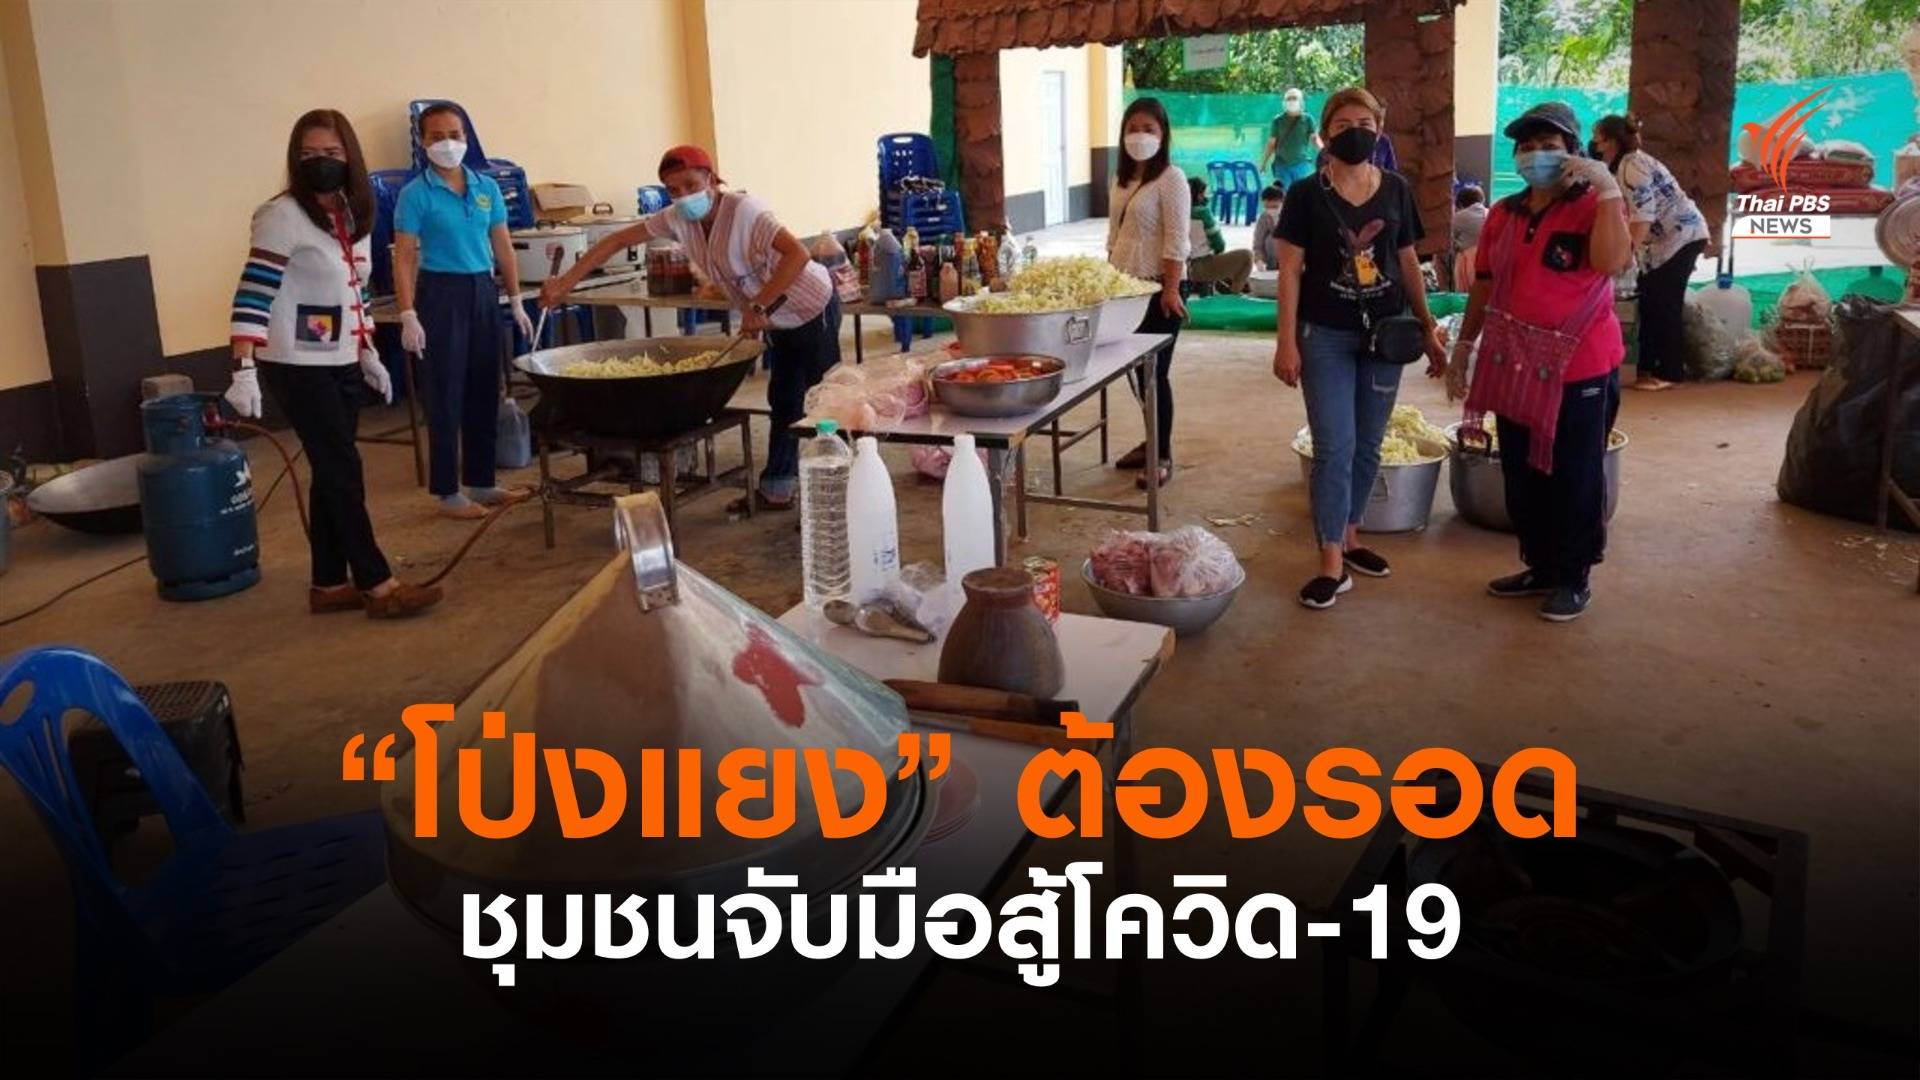 ทางรอดประเทศไทย “ประชาชนไปต่อ” : ชุมชนพร้อมสู้ โป่งแยงแม่ริม ต้องรอด